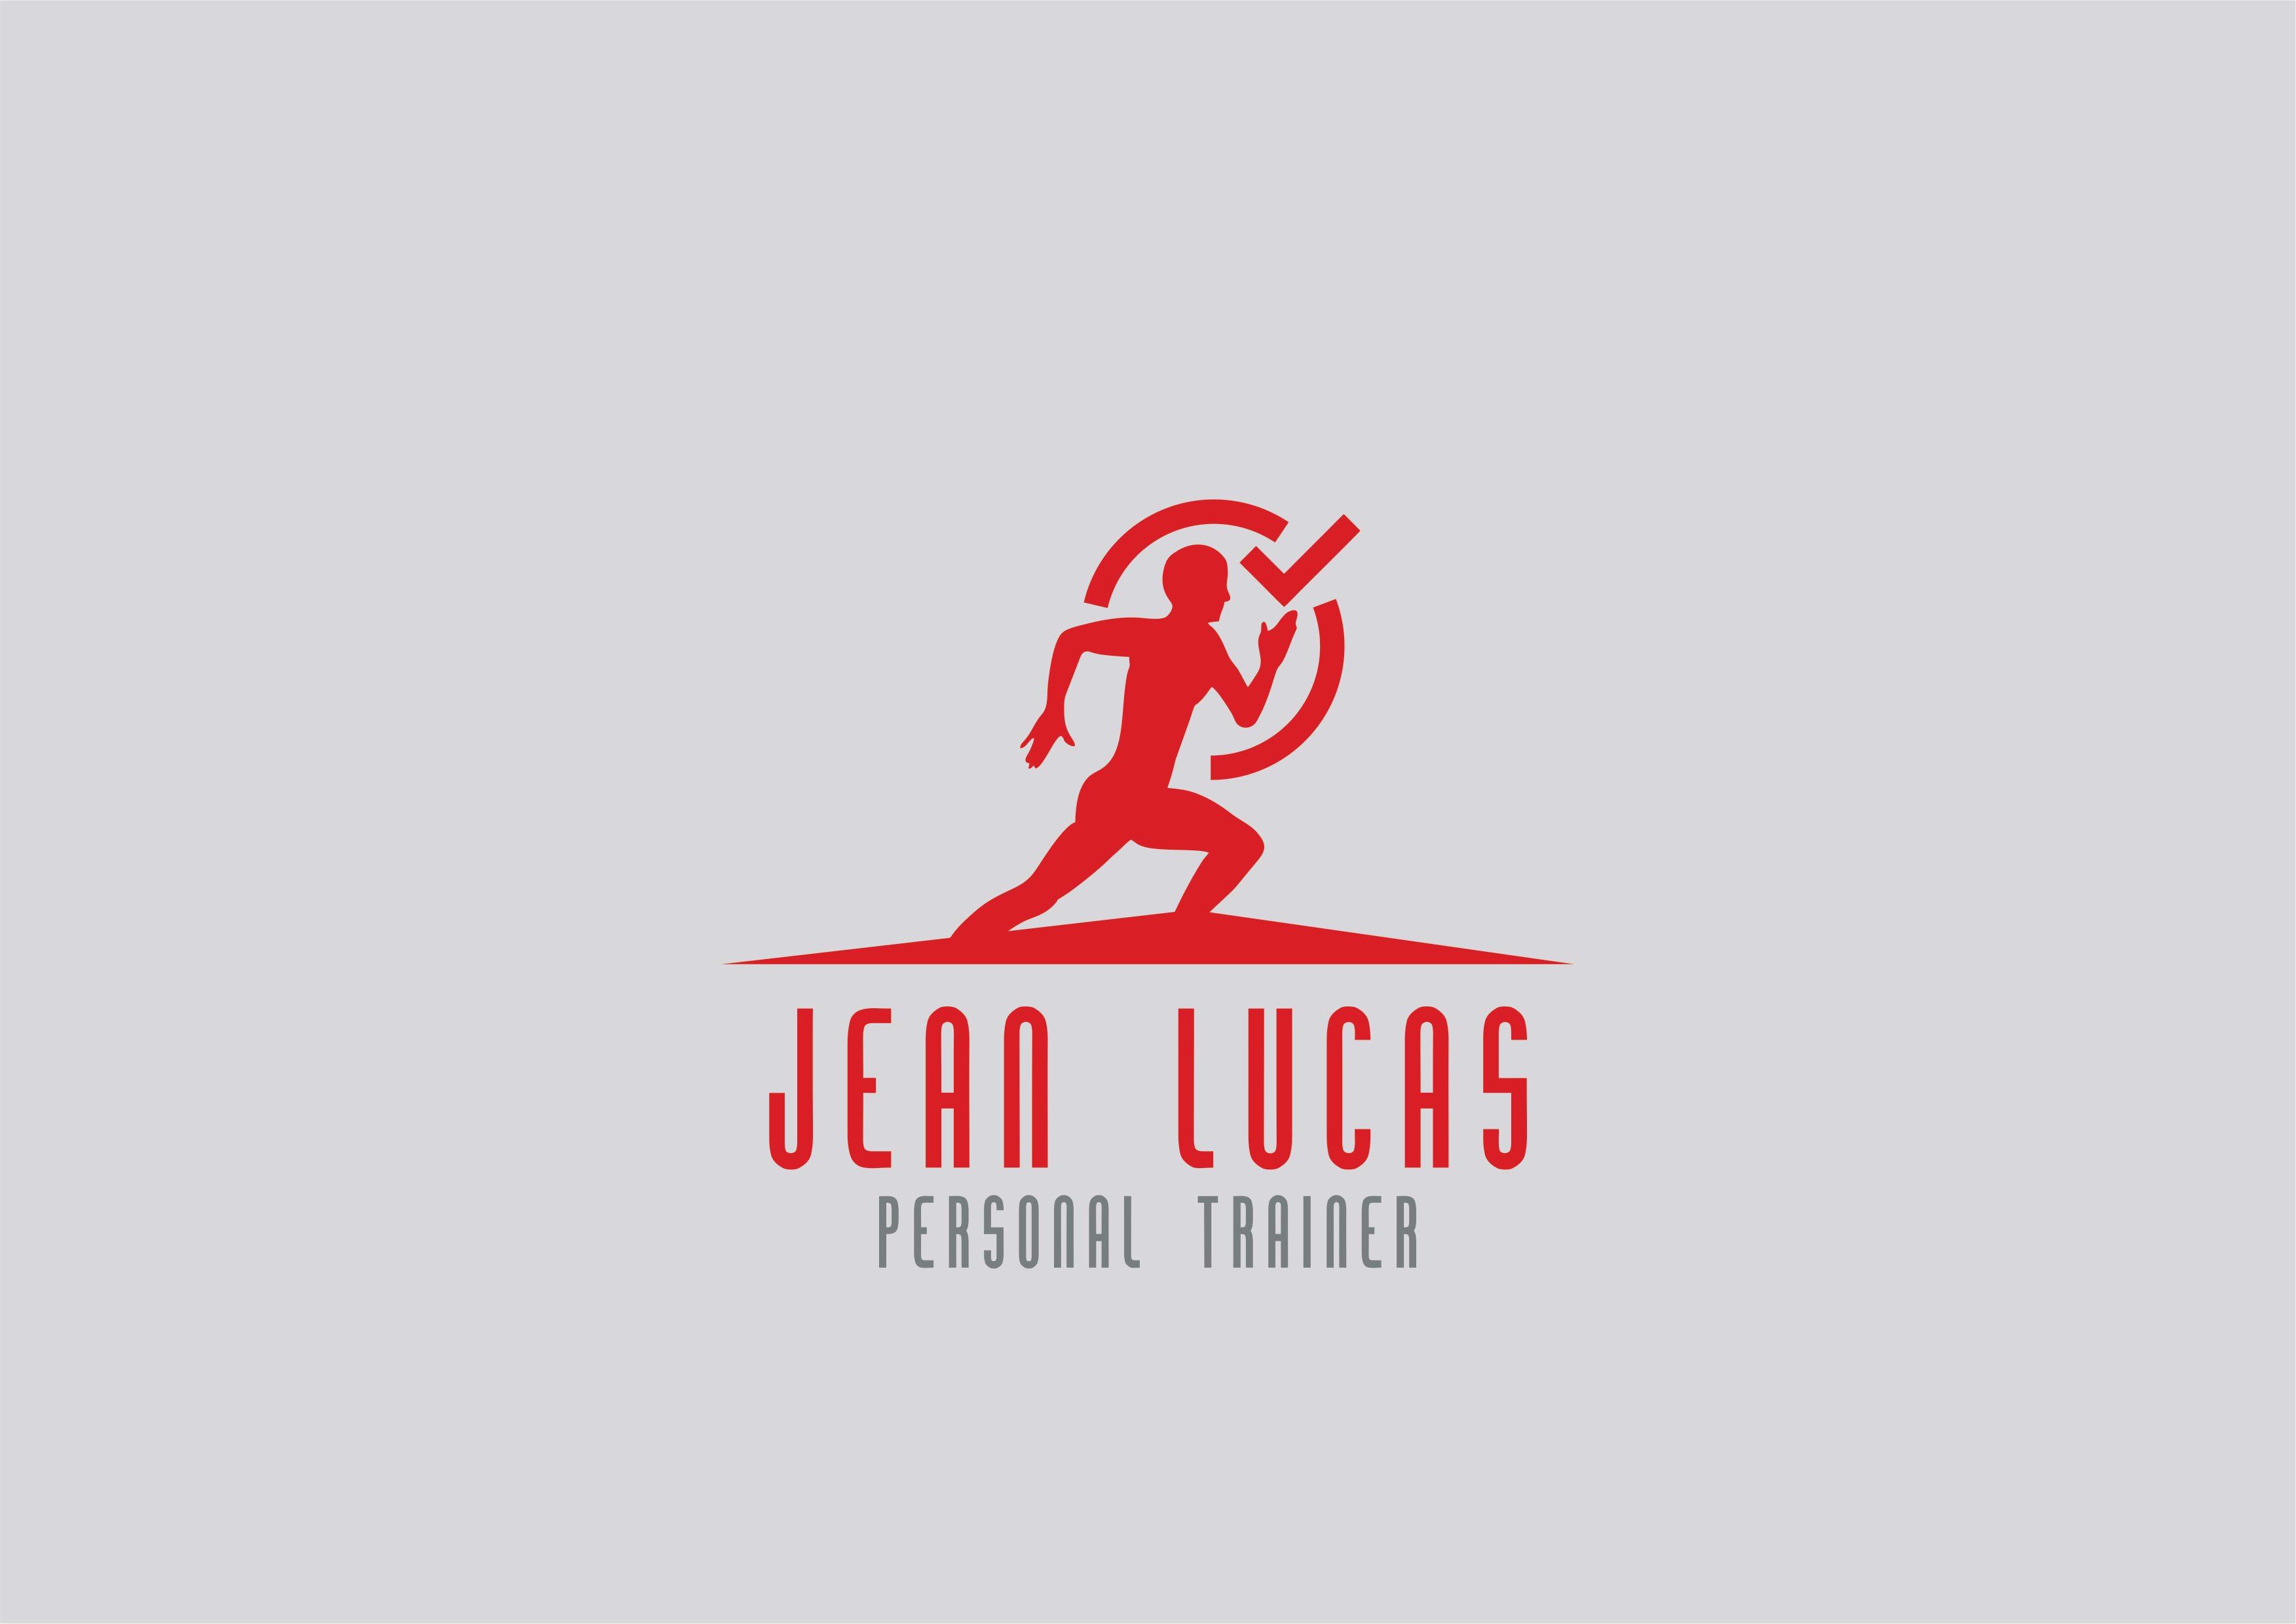 Jean Lucas personal